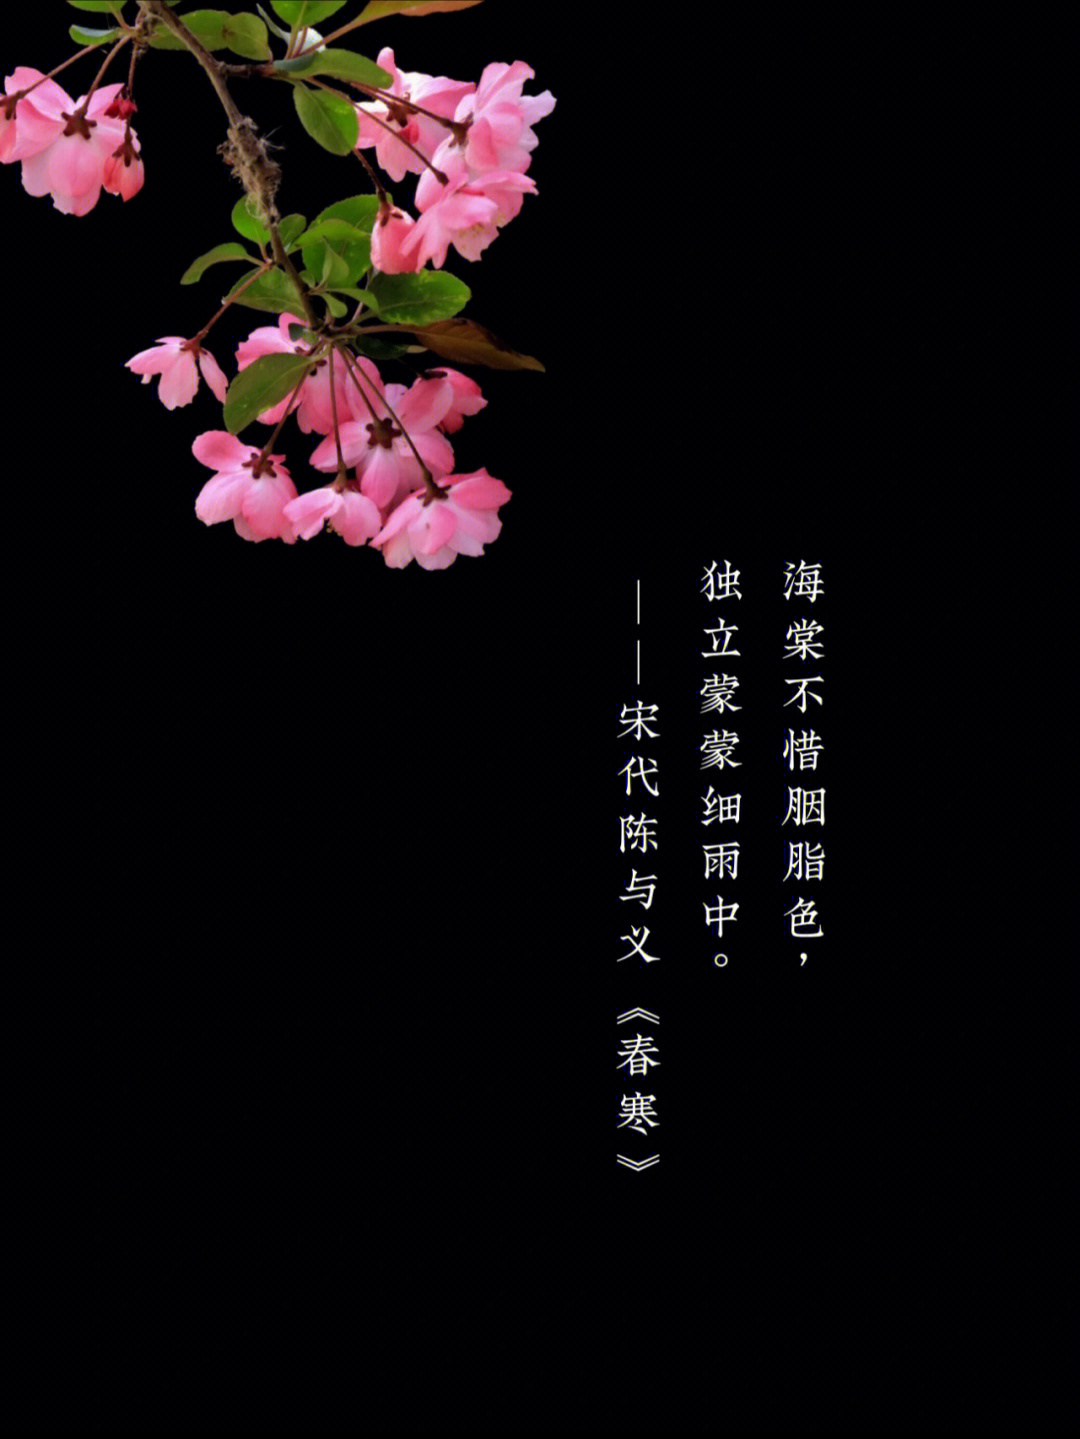 描写海棠花的诗句图片